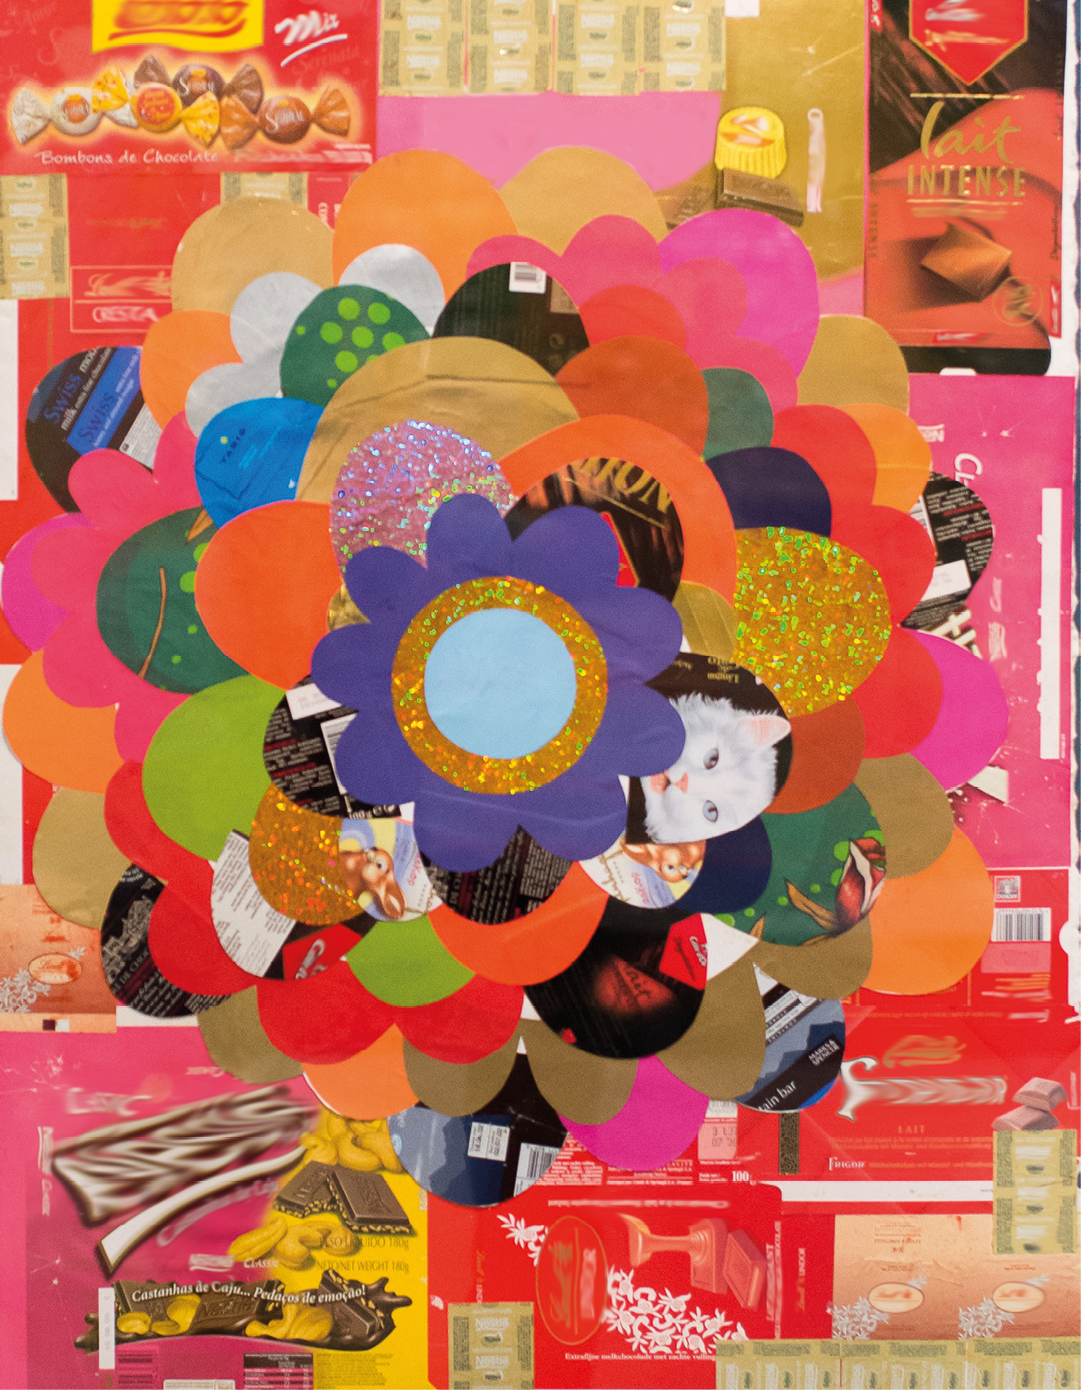 Colagem. Colagem de papéis coloridos que apresenta uma grande sobreposição de flores ao centro com embalagens de diferentes marcas de chocolate nas laterais do quadro.